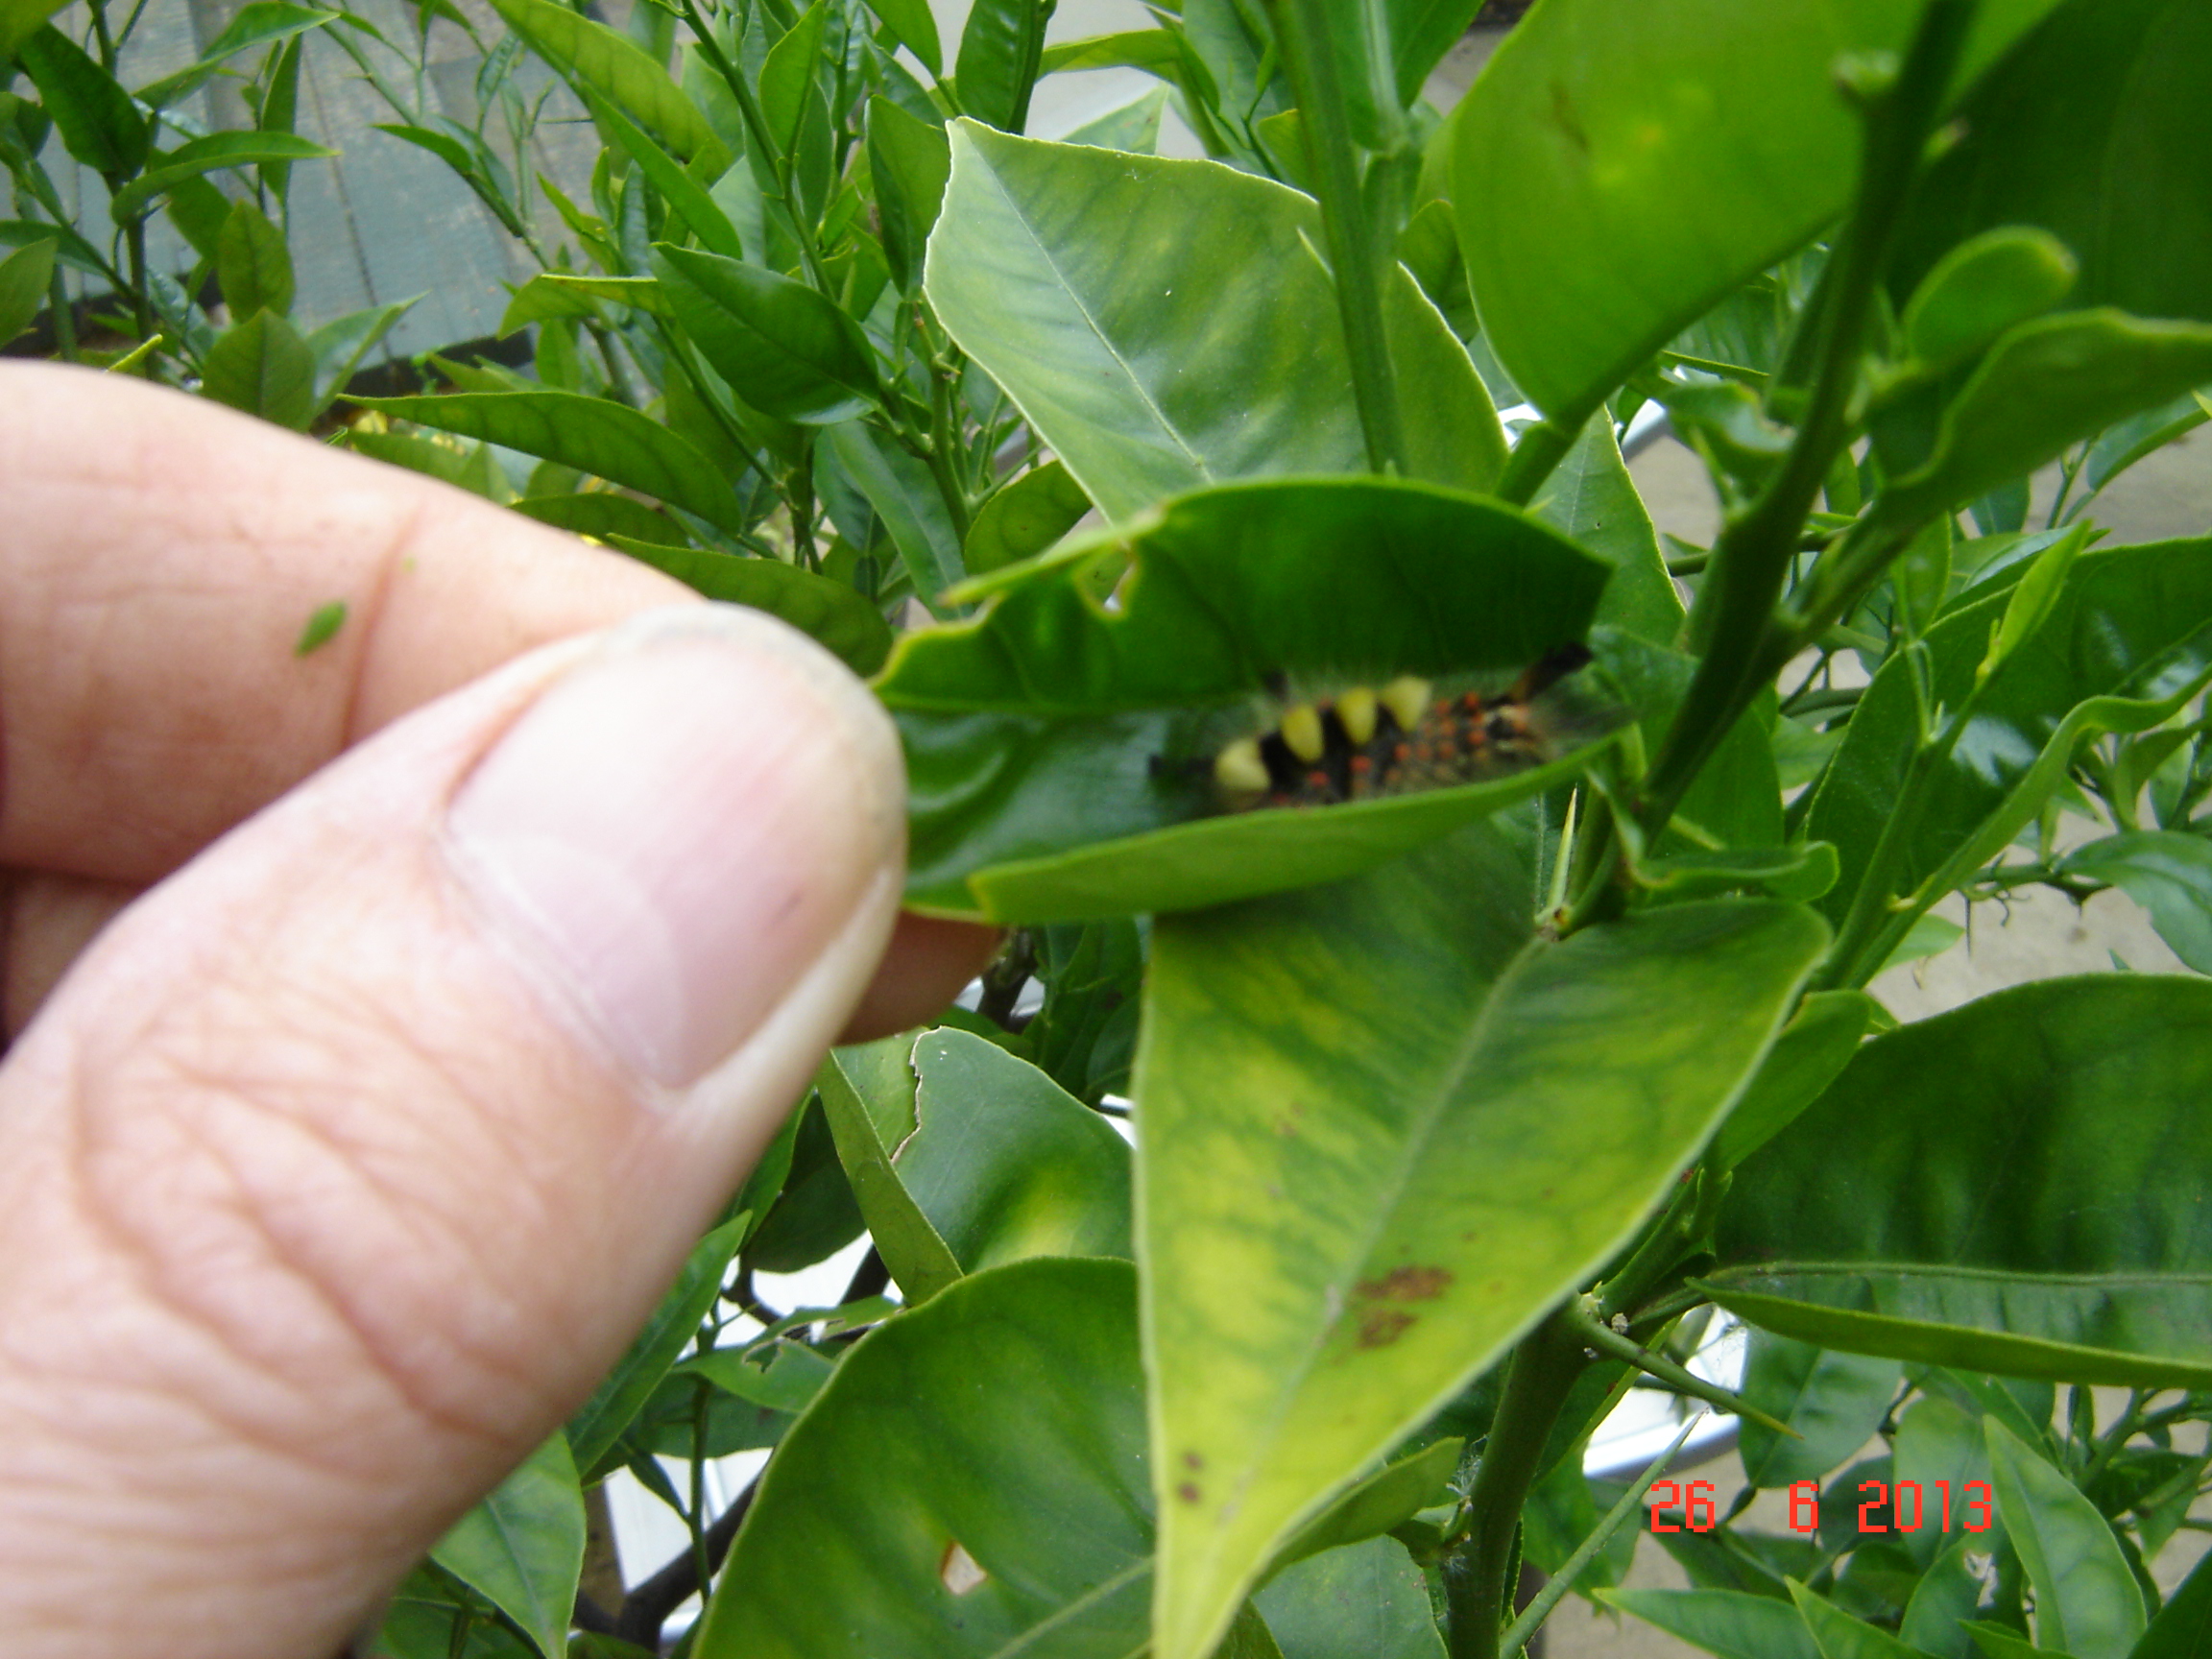 NaturePlus: Lemontree leaf eating bug??